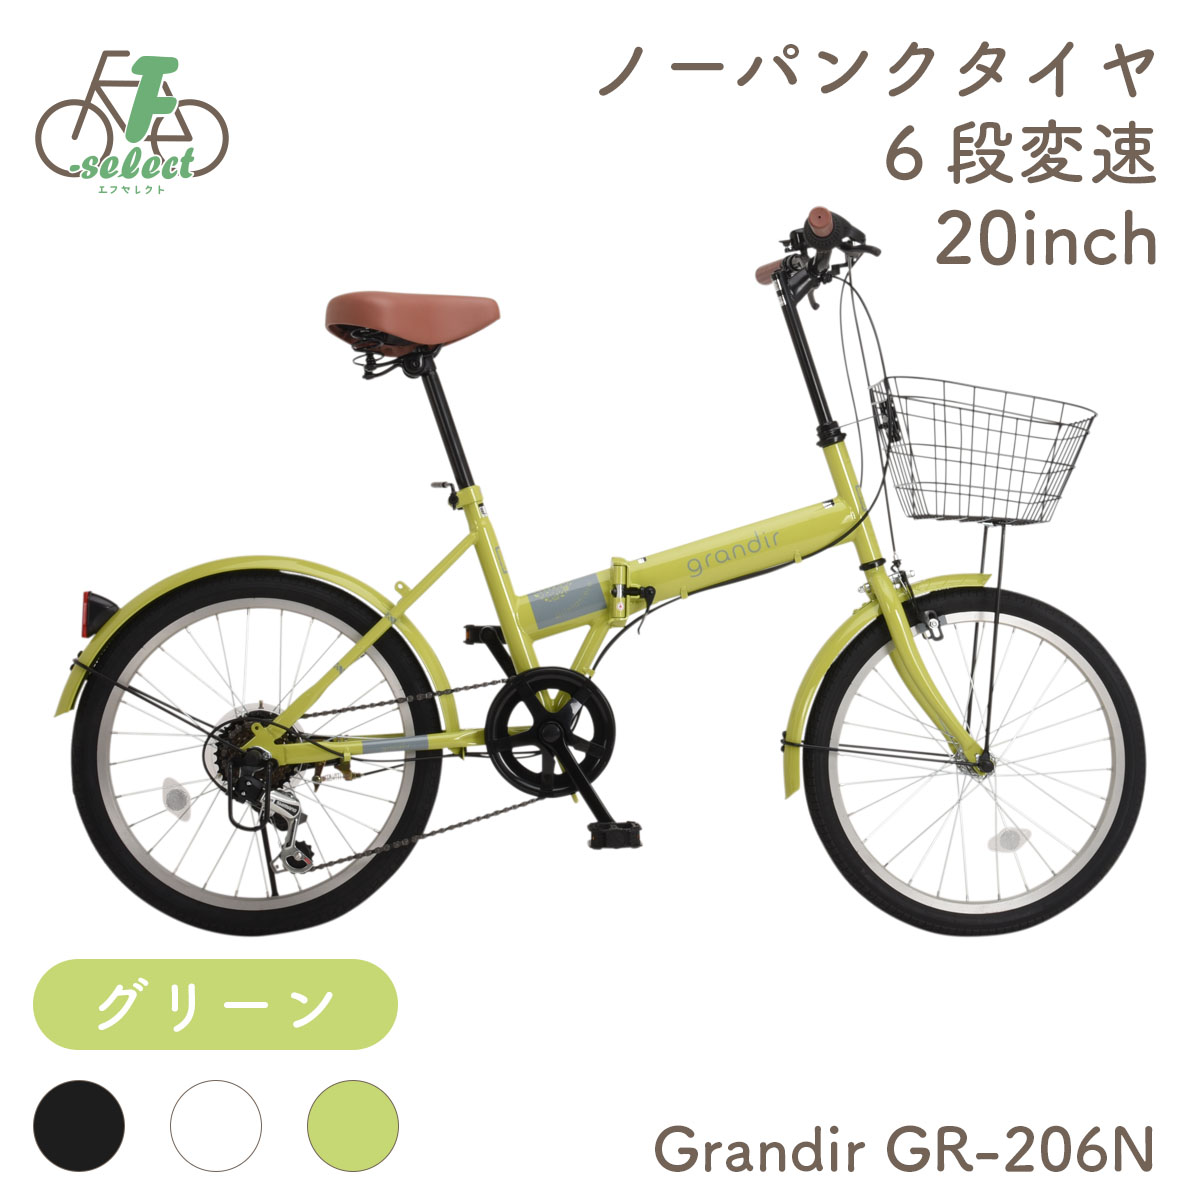 パンクしない 折りたたみ自転車 20インチ 完成品出荷 / 置き配可能 ノーパンクタイヤ ライト＆カギ シマノ6段変速 グランディール Grandir  GR-206N